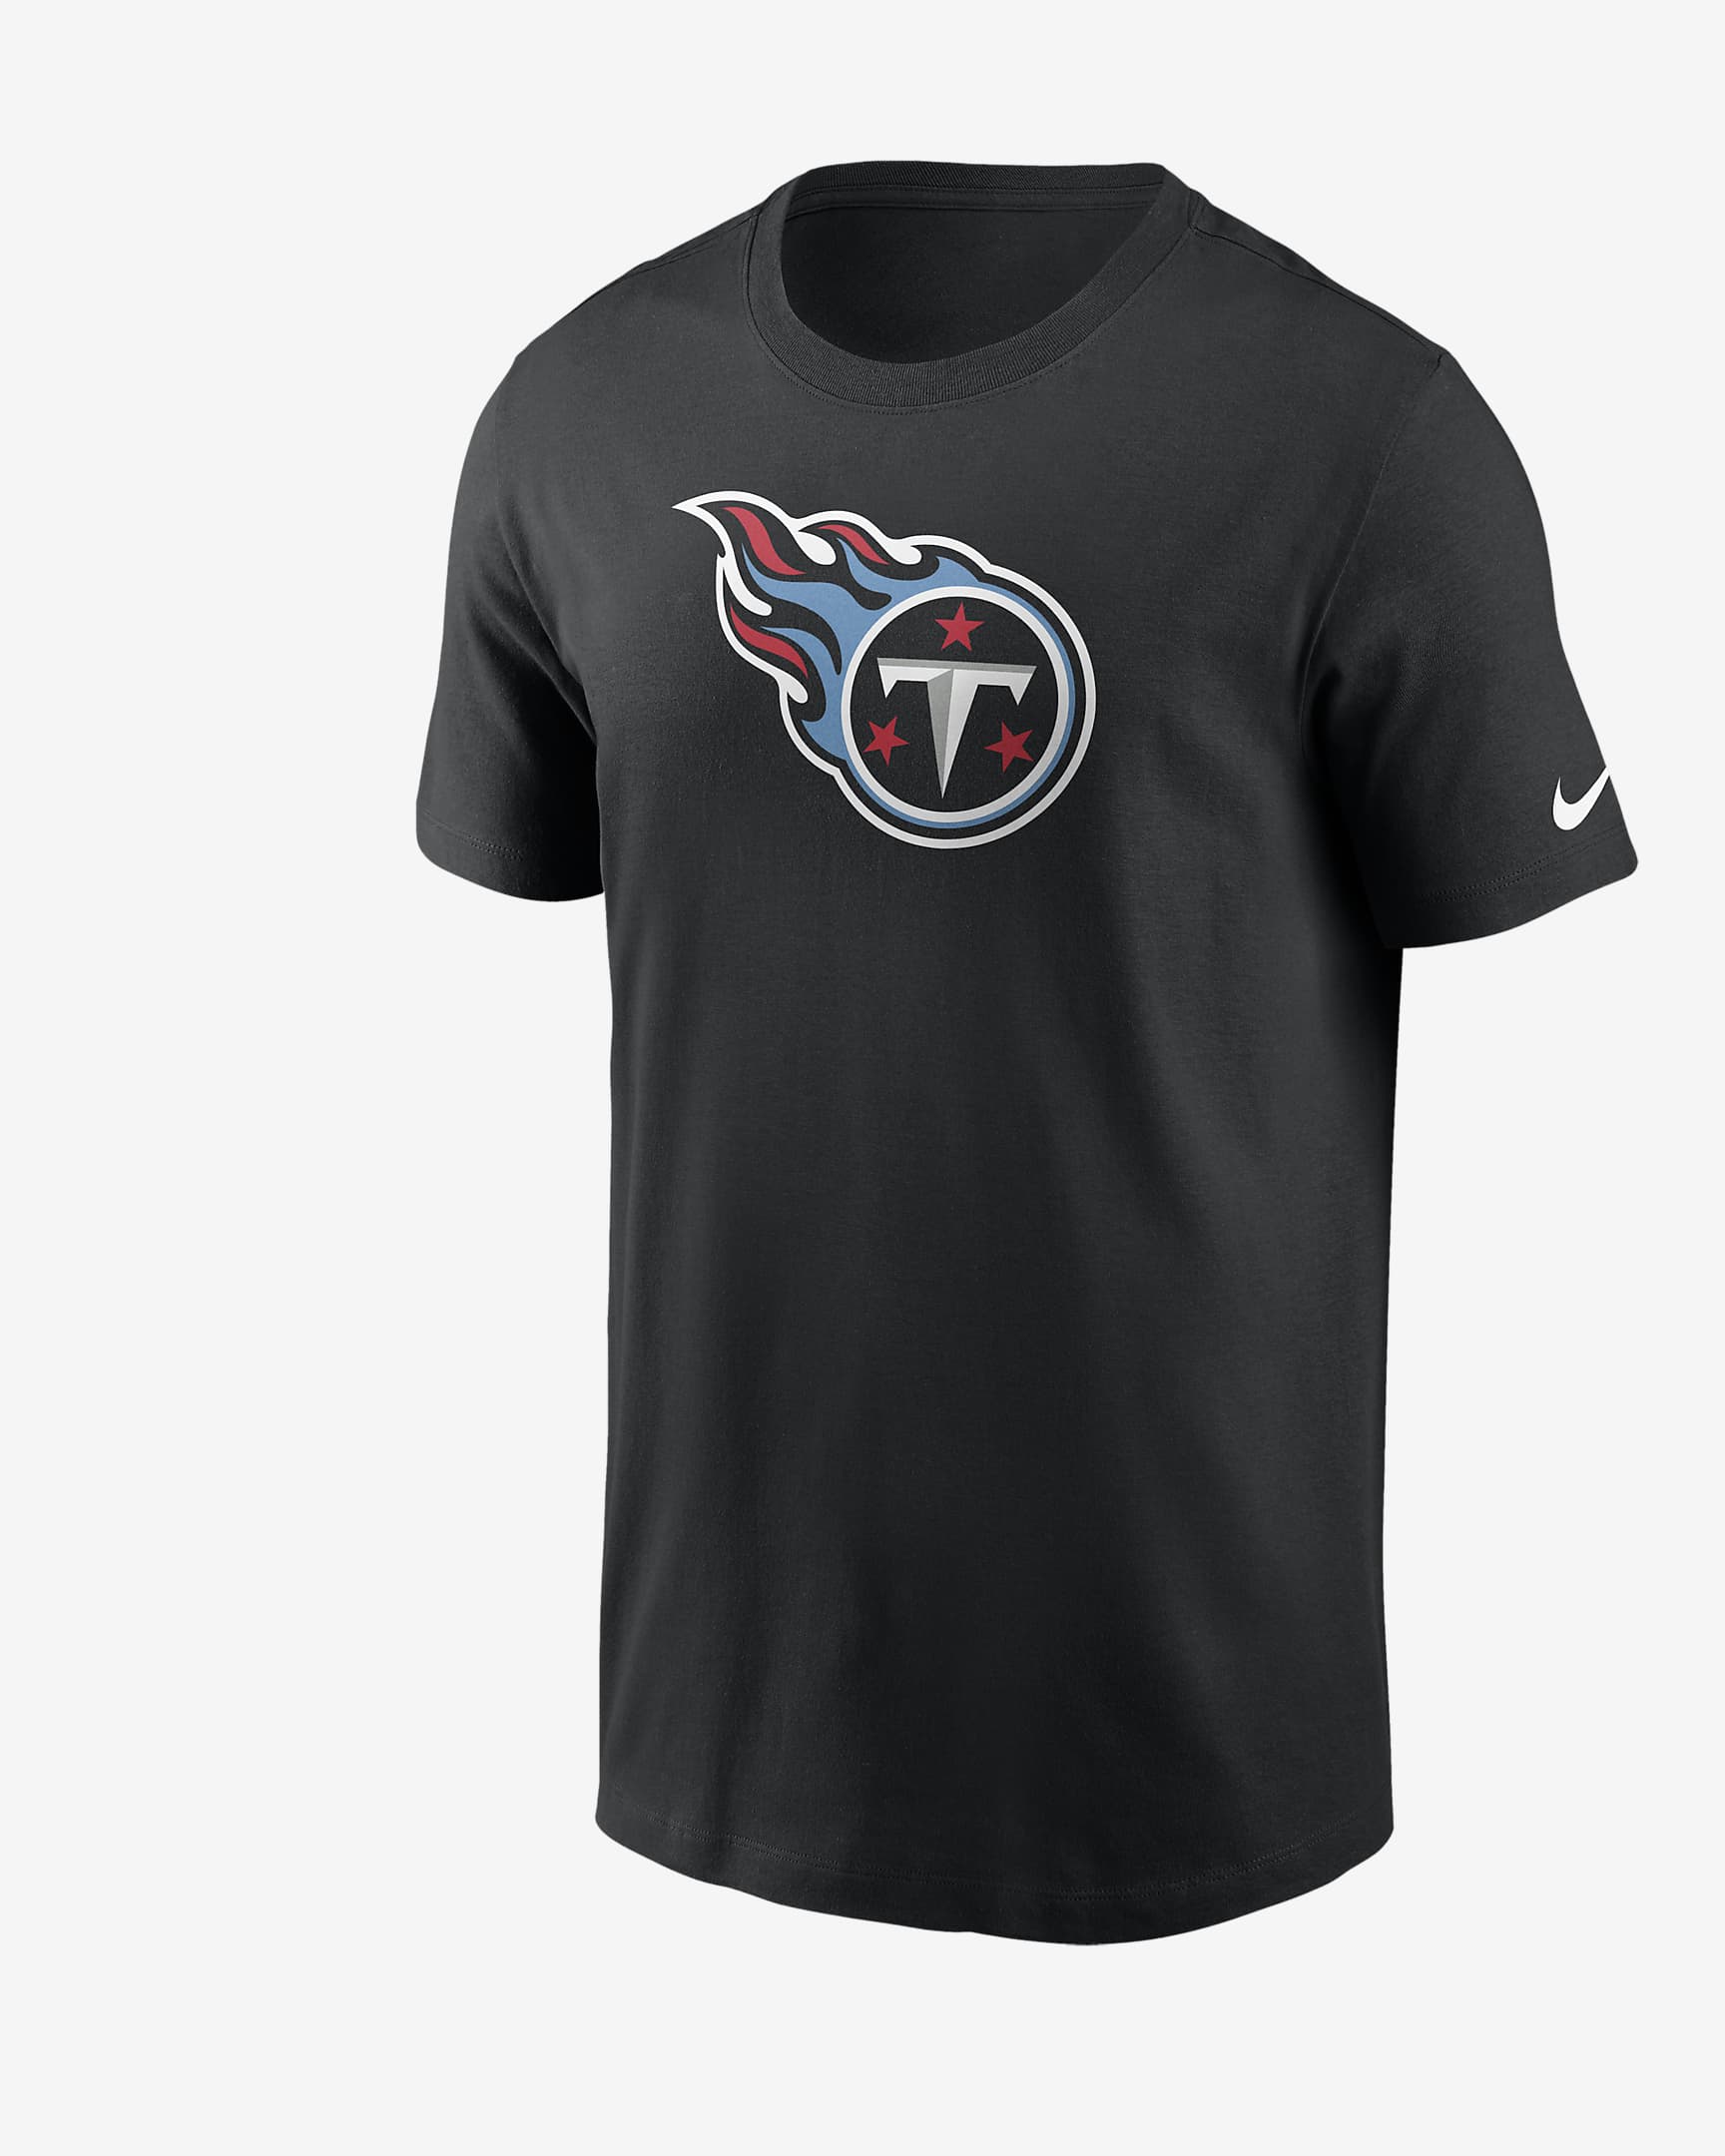 Playera Nike NFL para hombre Tennessee Titans Logo Essential. Nike.com